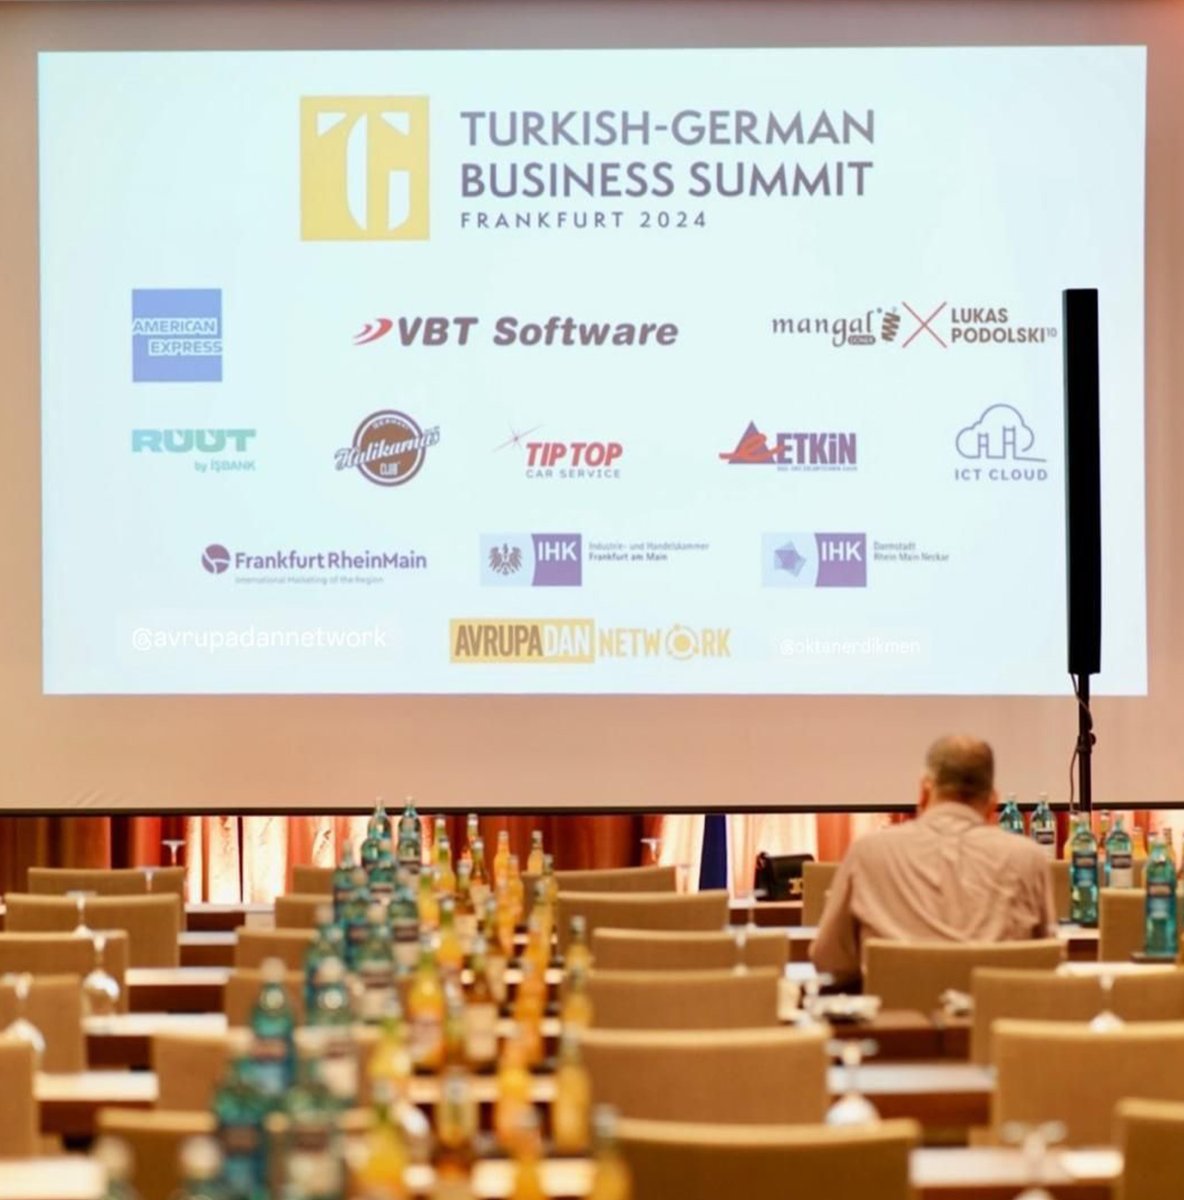 Türk-Alman İş Zirvesi'ndeydik!

18 Mayıs 2024 Cumartesi günü Frankfurt Kempinski Hotel'de gerçekleşen zirveye Satış Müdürümüz Fatih Tuna Alpyılmaz katıldı.

Bu özel zirveyi düzenleyen Avrupadan Network'e ve emeği geçen herkese teşekkür ederiz.

#Detaysoft #TürkAlmanİşZirvesi